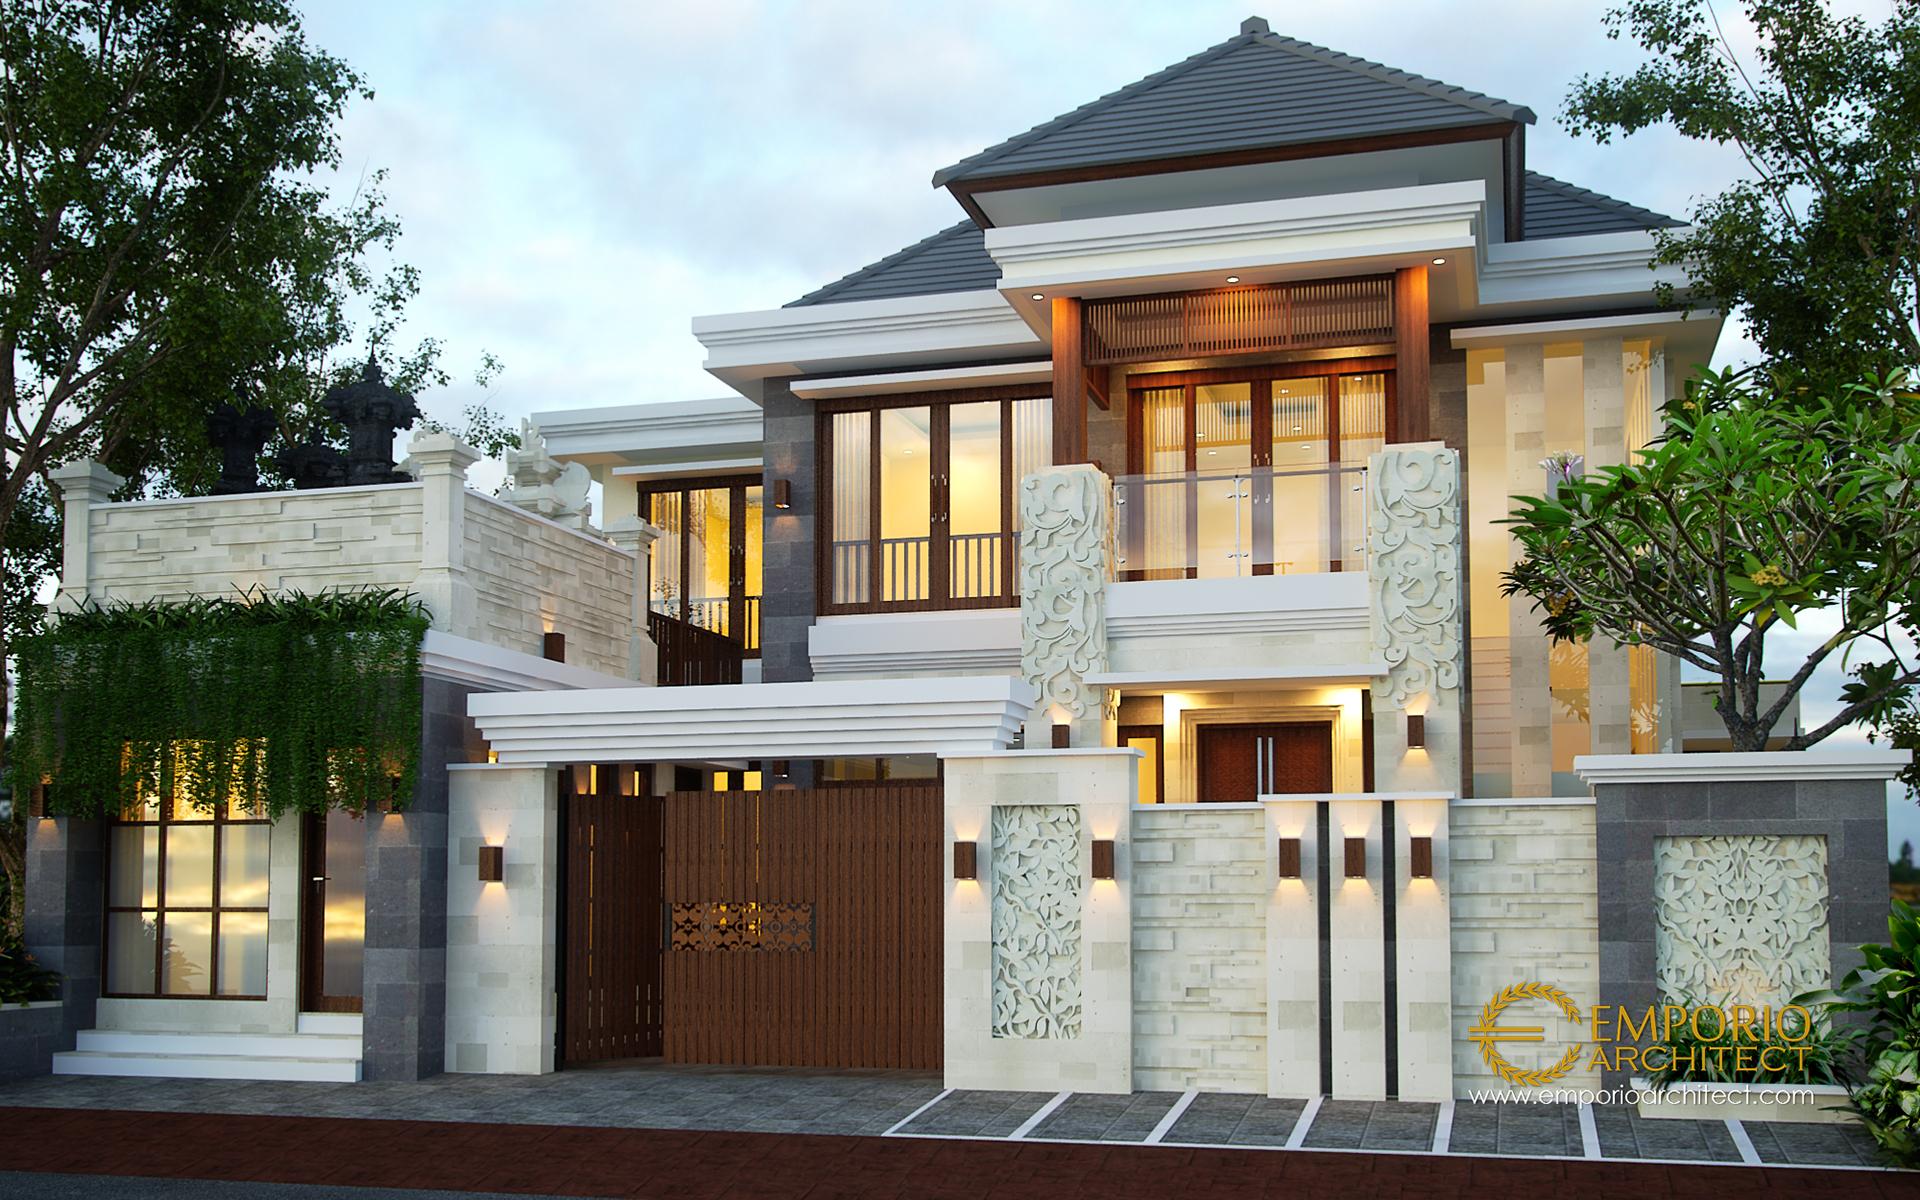 Desain Rumah Villa Bali 2 Lantai Ibu Citra Di Denpasar